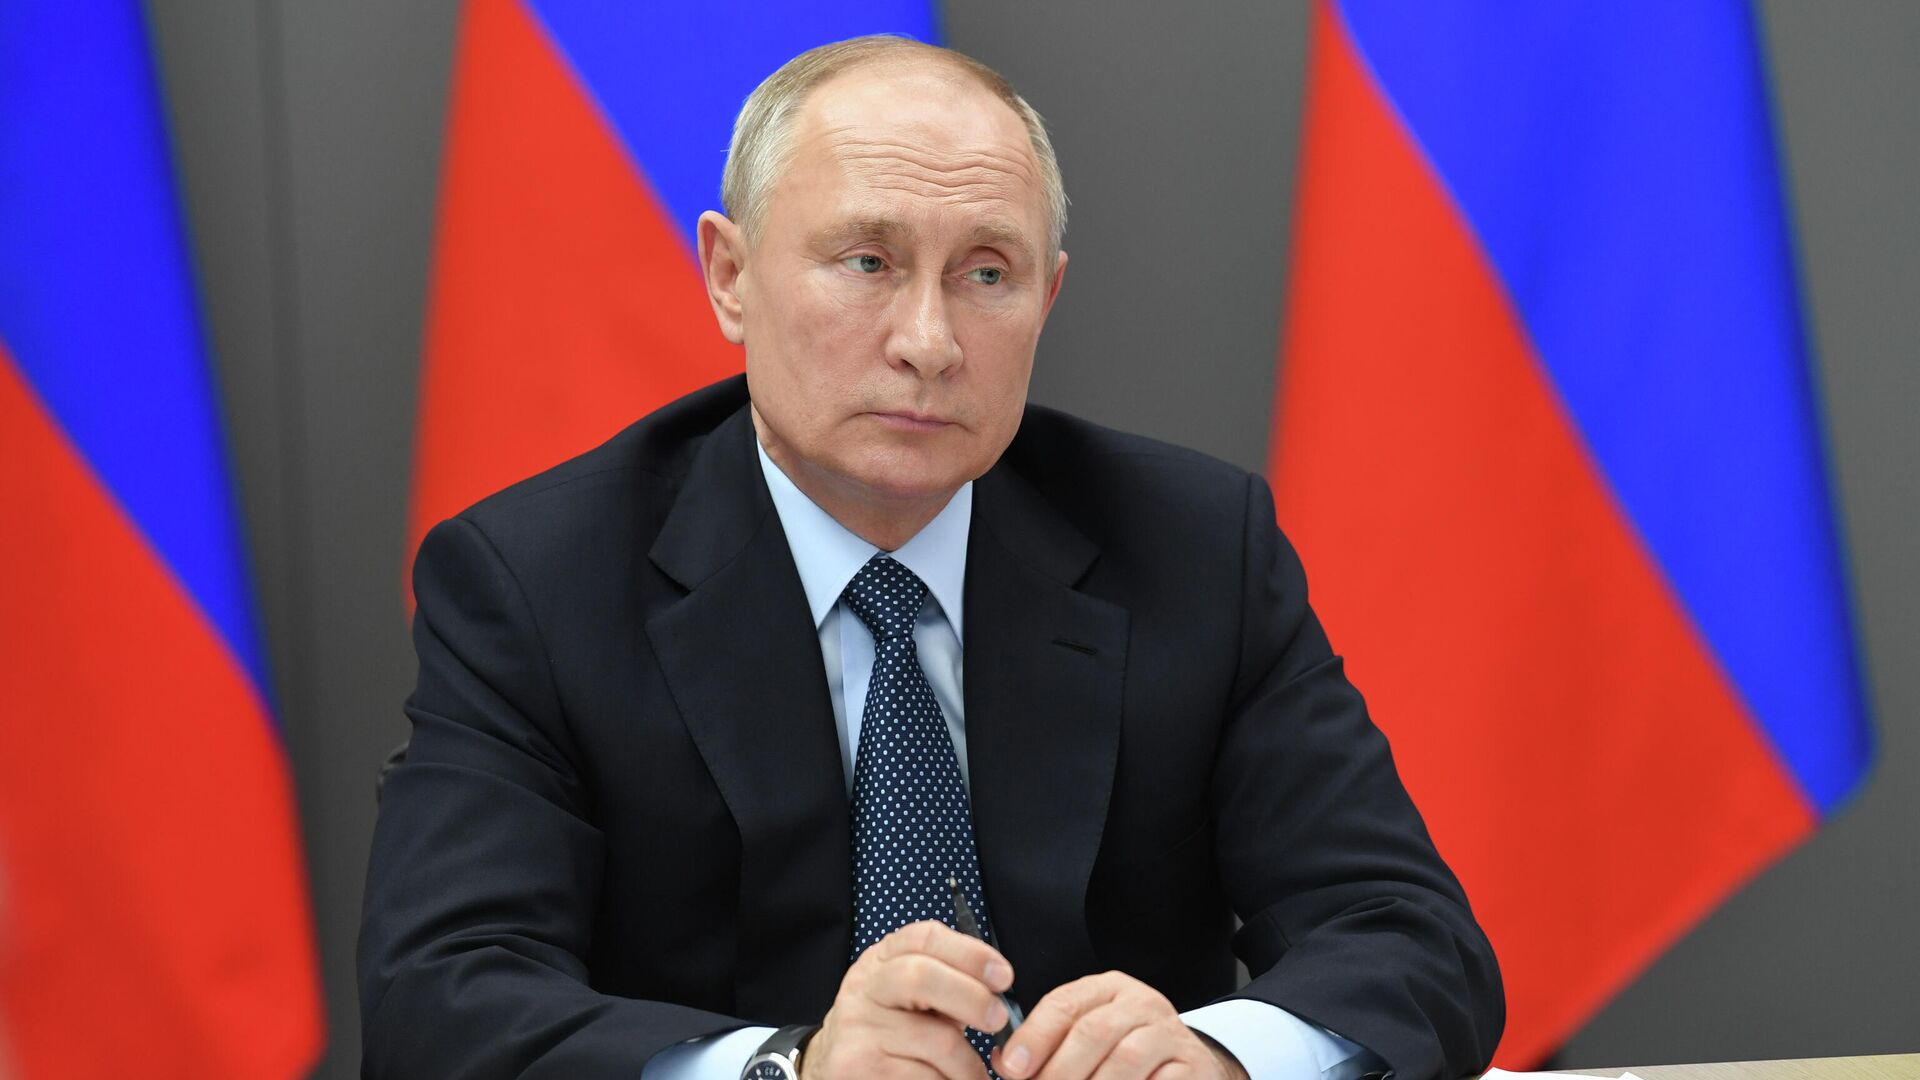 Путин призвал поддержать производство малотоннажной продукции